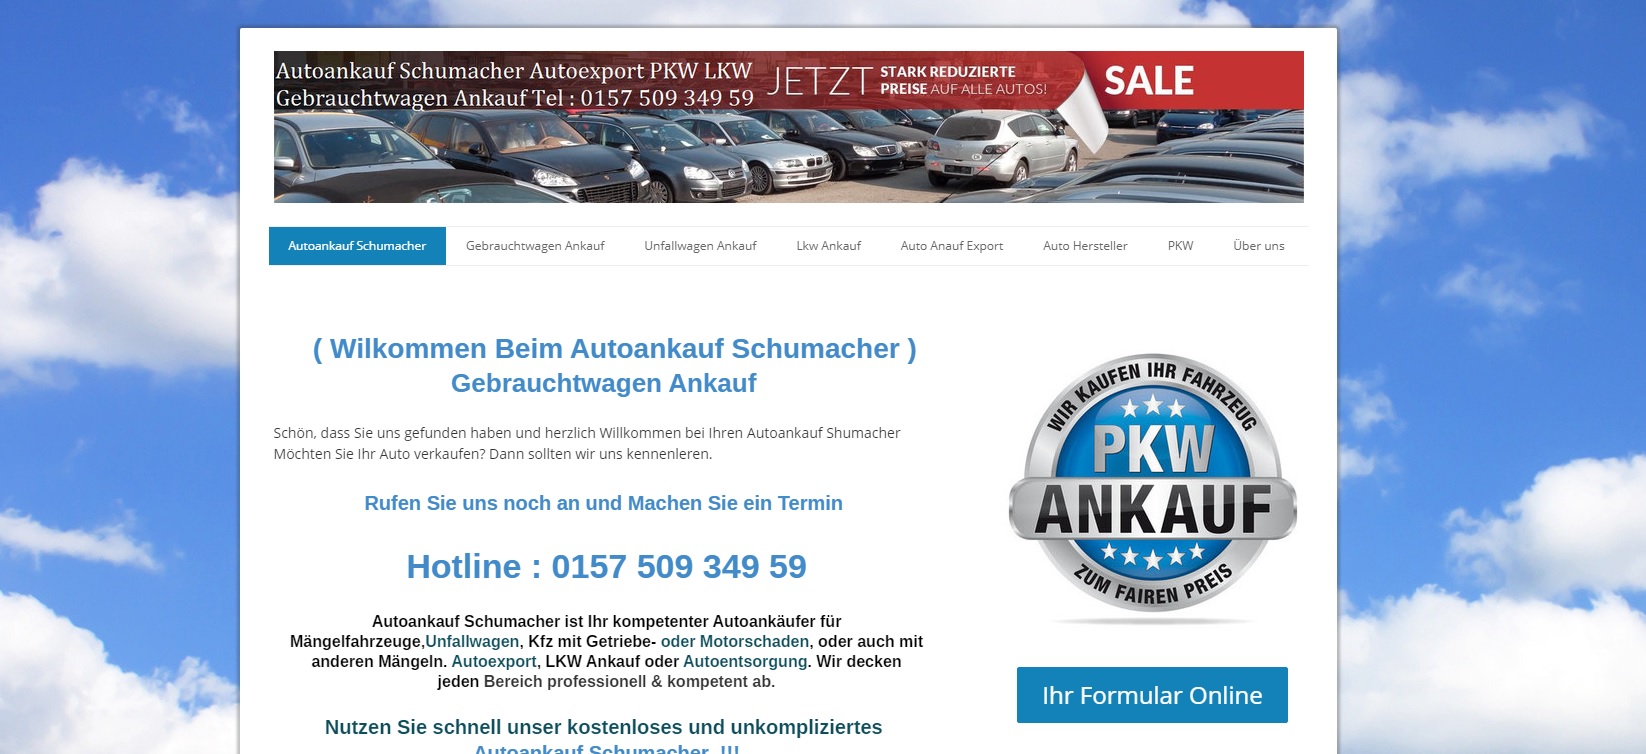 autoankauf dortmund ankauf von autoankauf schumacher dortmund - Autoankauf Dortmund – Ankauf von AutoAnkauf Schumacher Dortmund